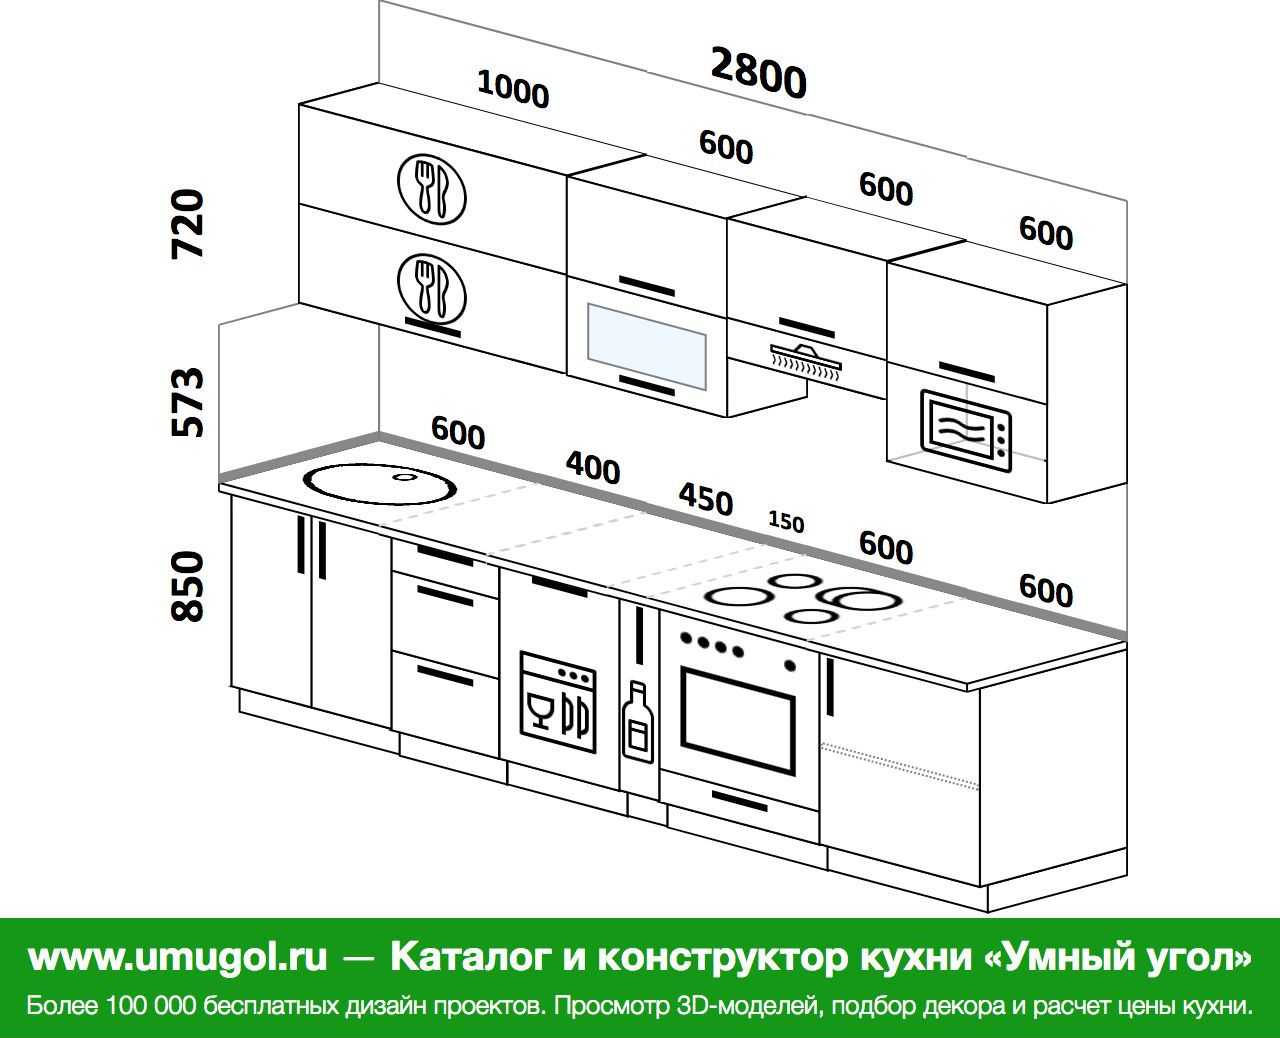 Размеры кухонных гарнитуров (30 фото): проекты гарнитуров со стандартными размерами, стандарт глубины и ширины кухни, нестандартные габариты мебели, параметры высоты и длины